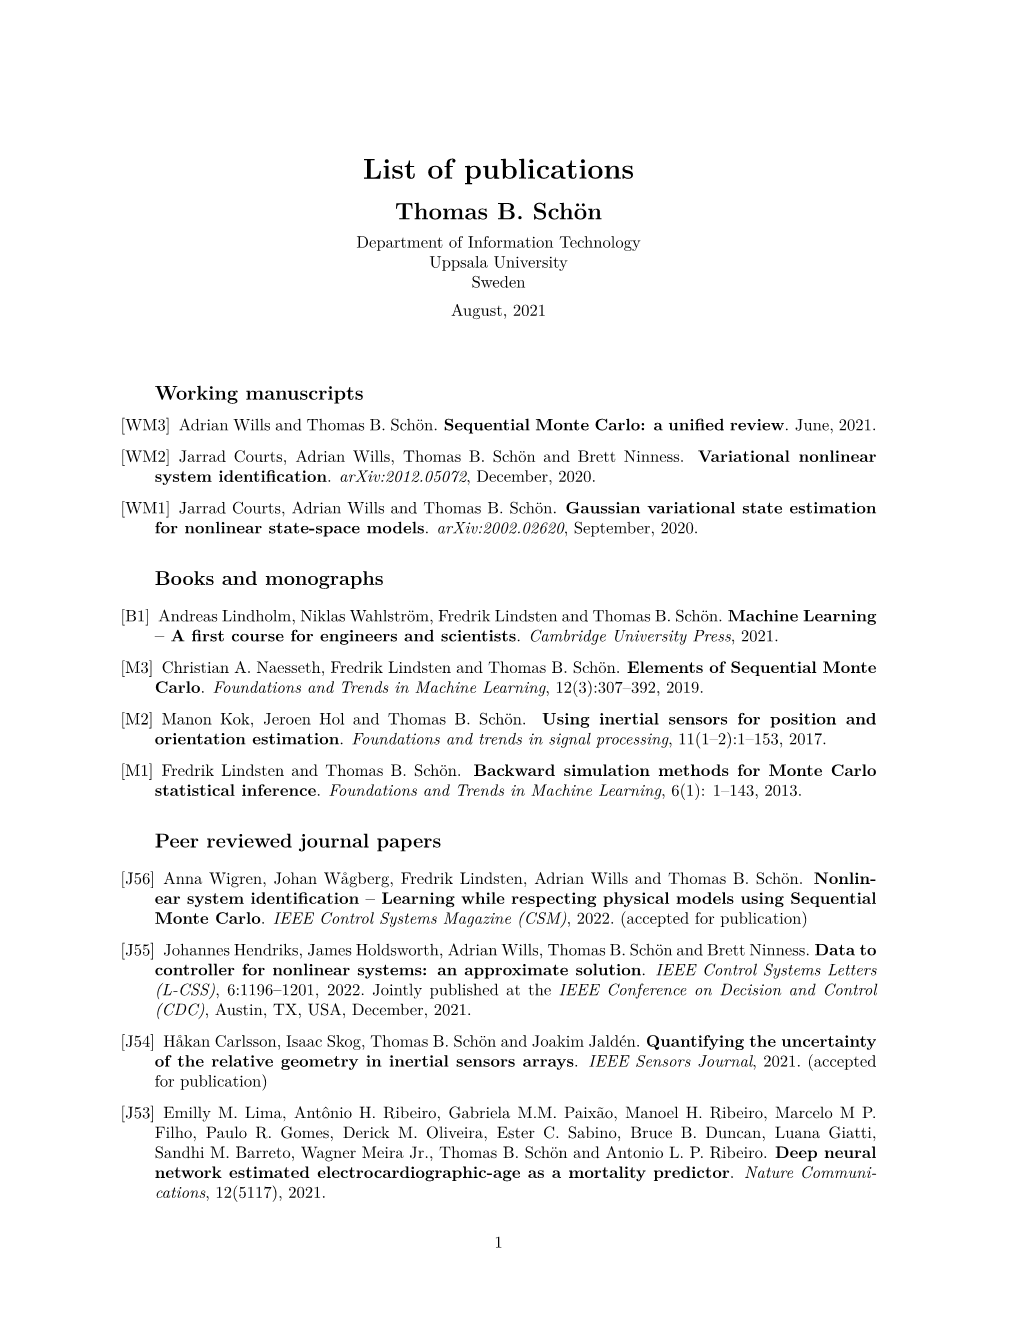 List of Publications Thomas B